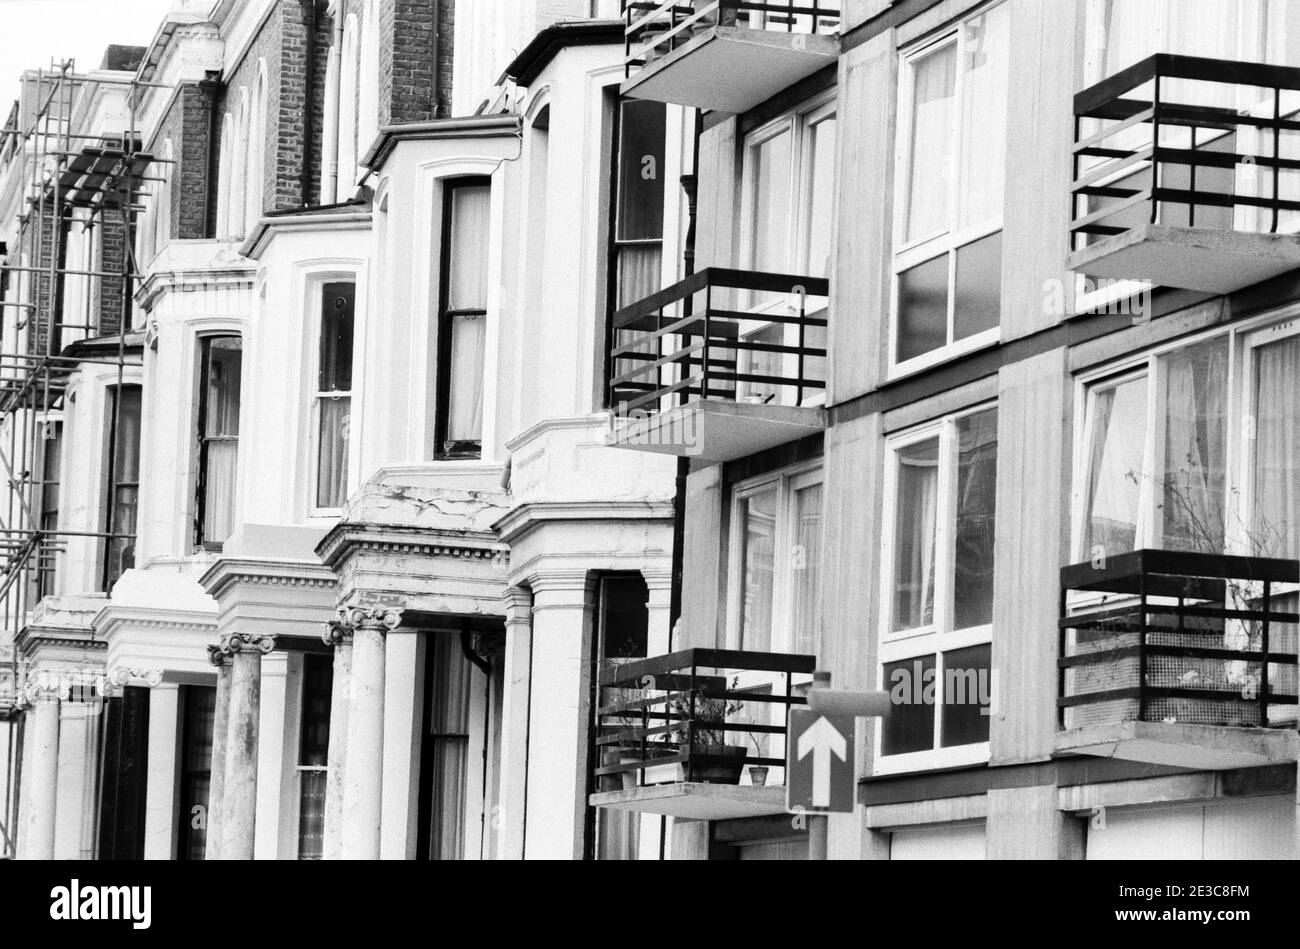 Royaume-Uni, West London, Notting Hill, 1973. Les grandes maisons de quatre étages en ruine et en ruine commencent à être restaurées et redécorées. Près de No:2 Powis Gardens. À droite se trouvent les garages de Powis court, en dessous des balcons, entrée de Powis Square. Banque D'Images